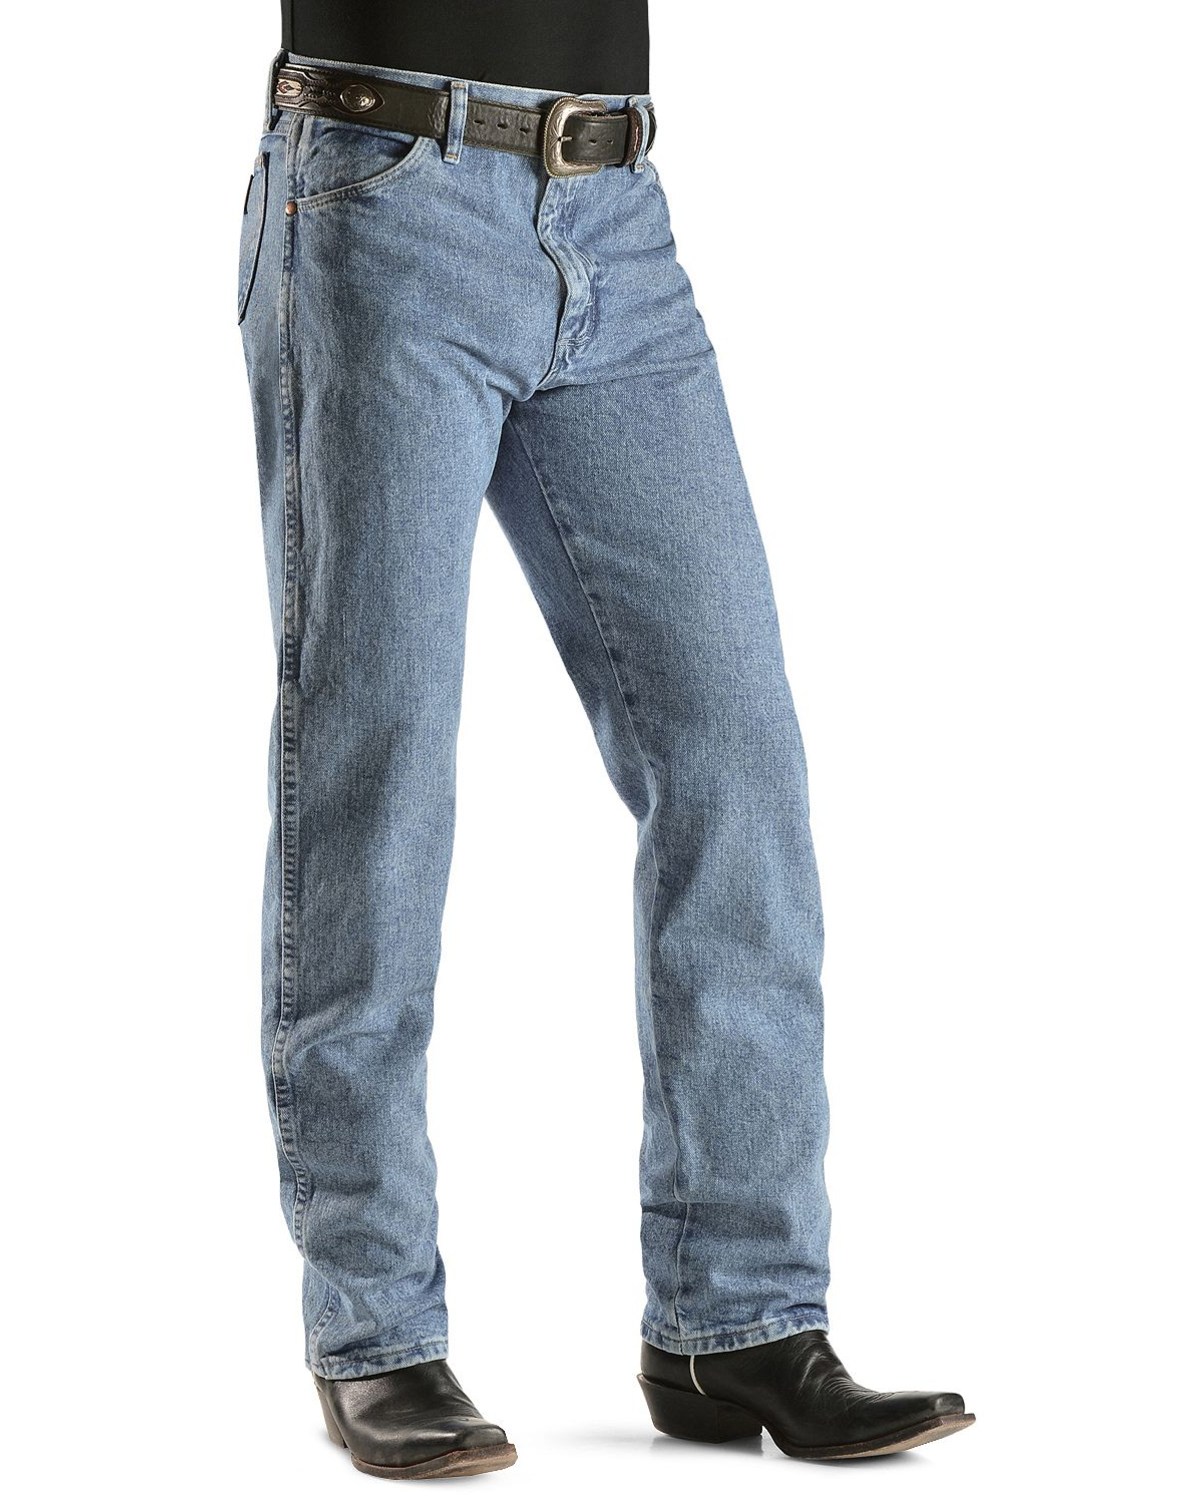 Wrangler Men's 13Mwz Jeans Cowboy Cut Original Fit Prewashed Antique Blue 33W x 32L  US - image 2 of 2